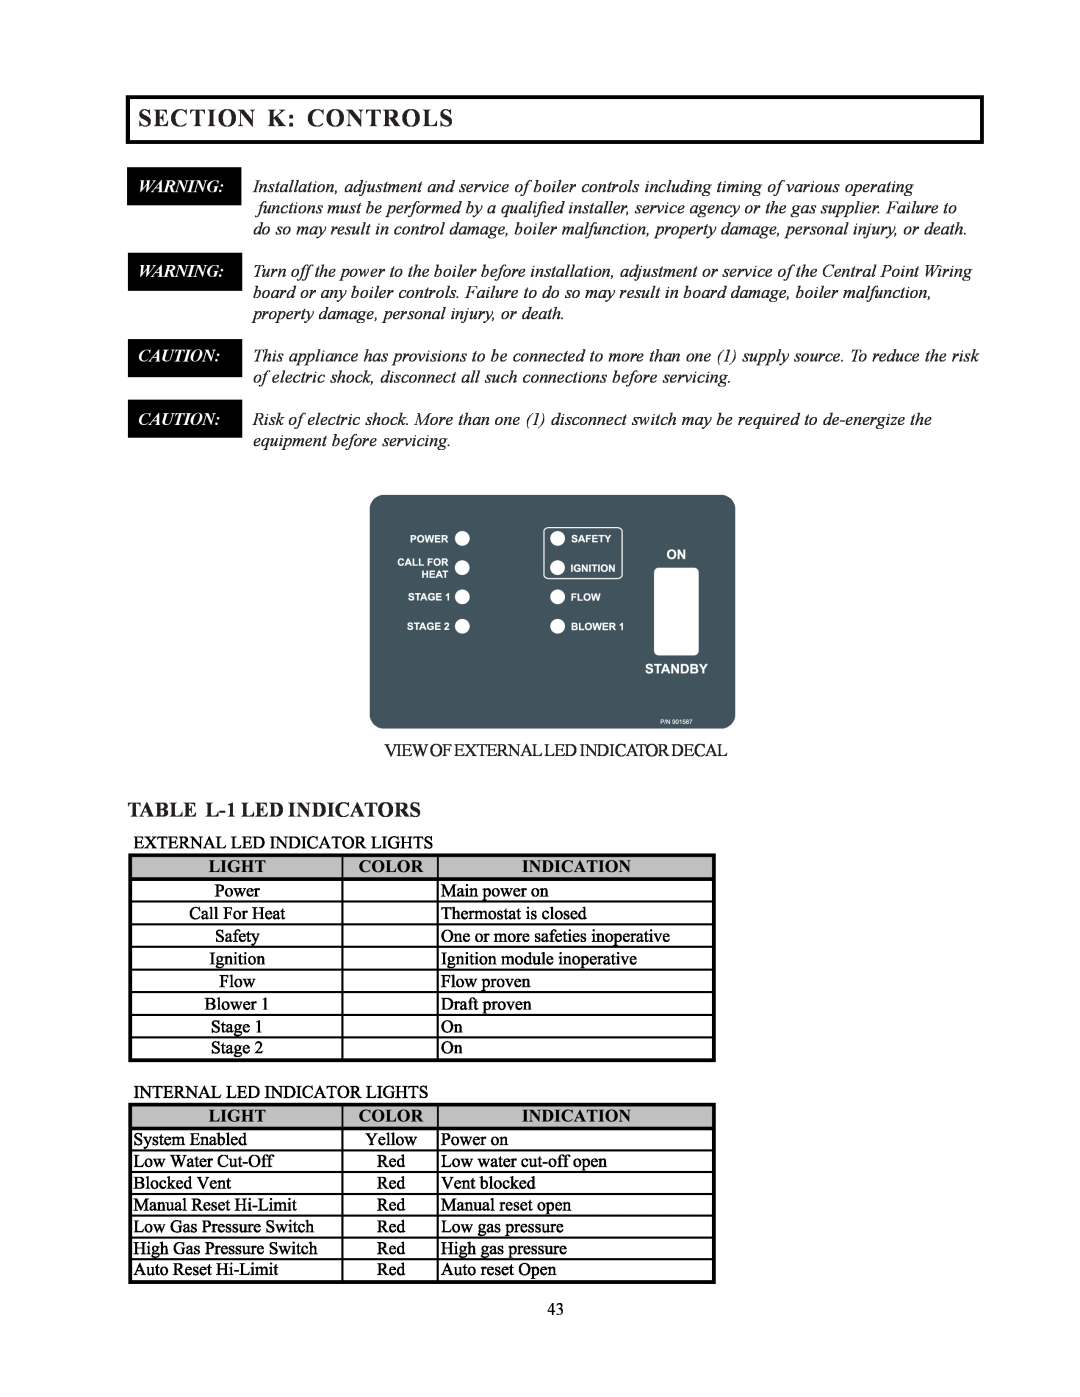 Raypak 302-902 manual Section K Controls, TABLE L-1LED INDICATORS 